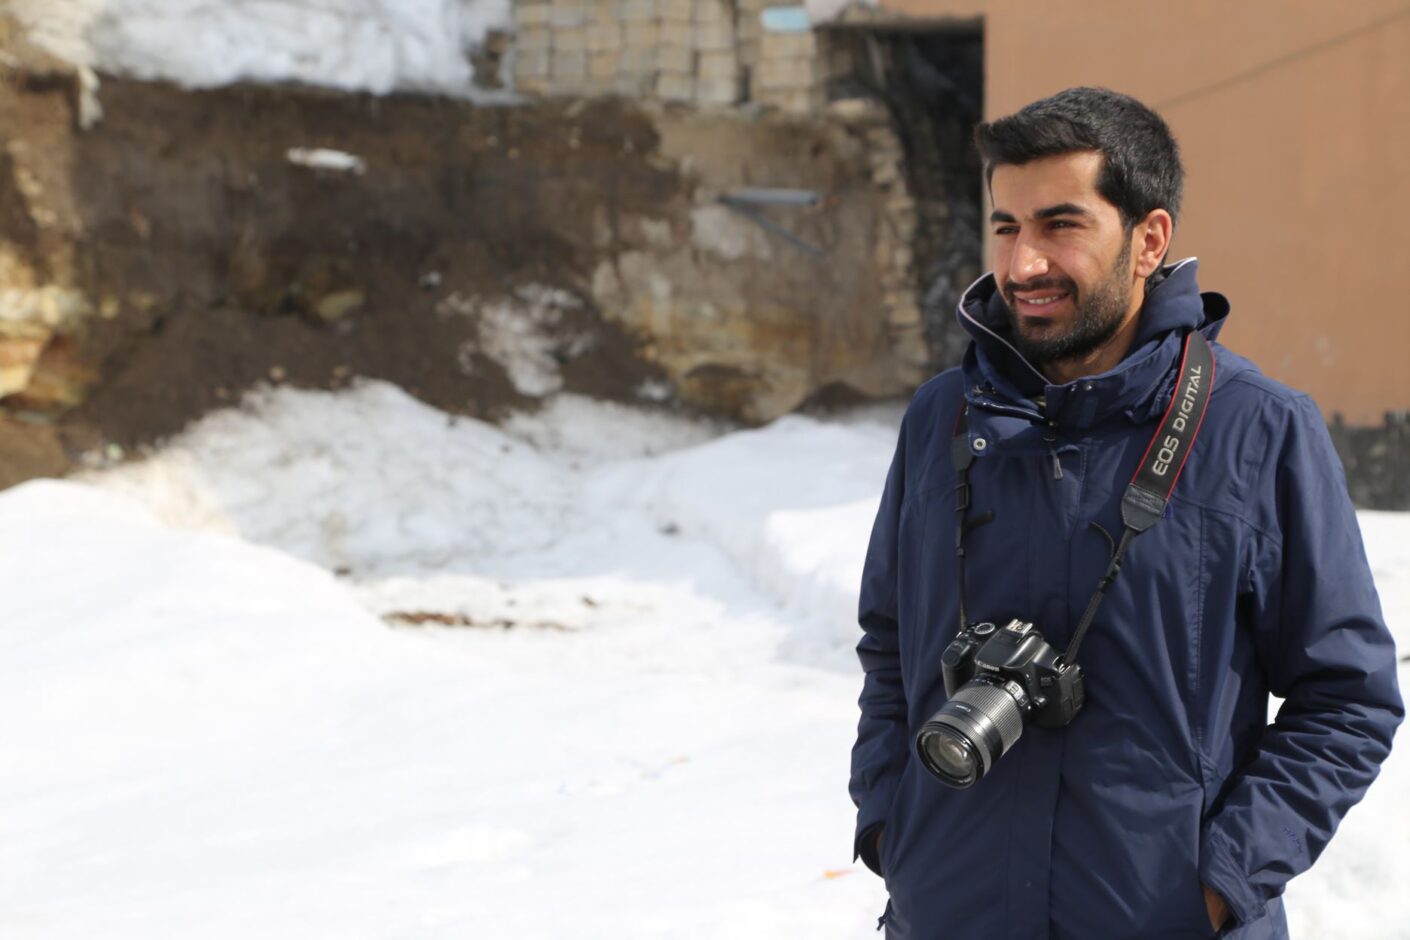  الصحفي الكردي التركي نديم تورفنت.